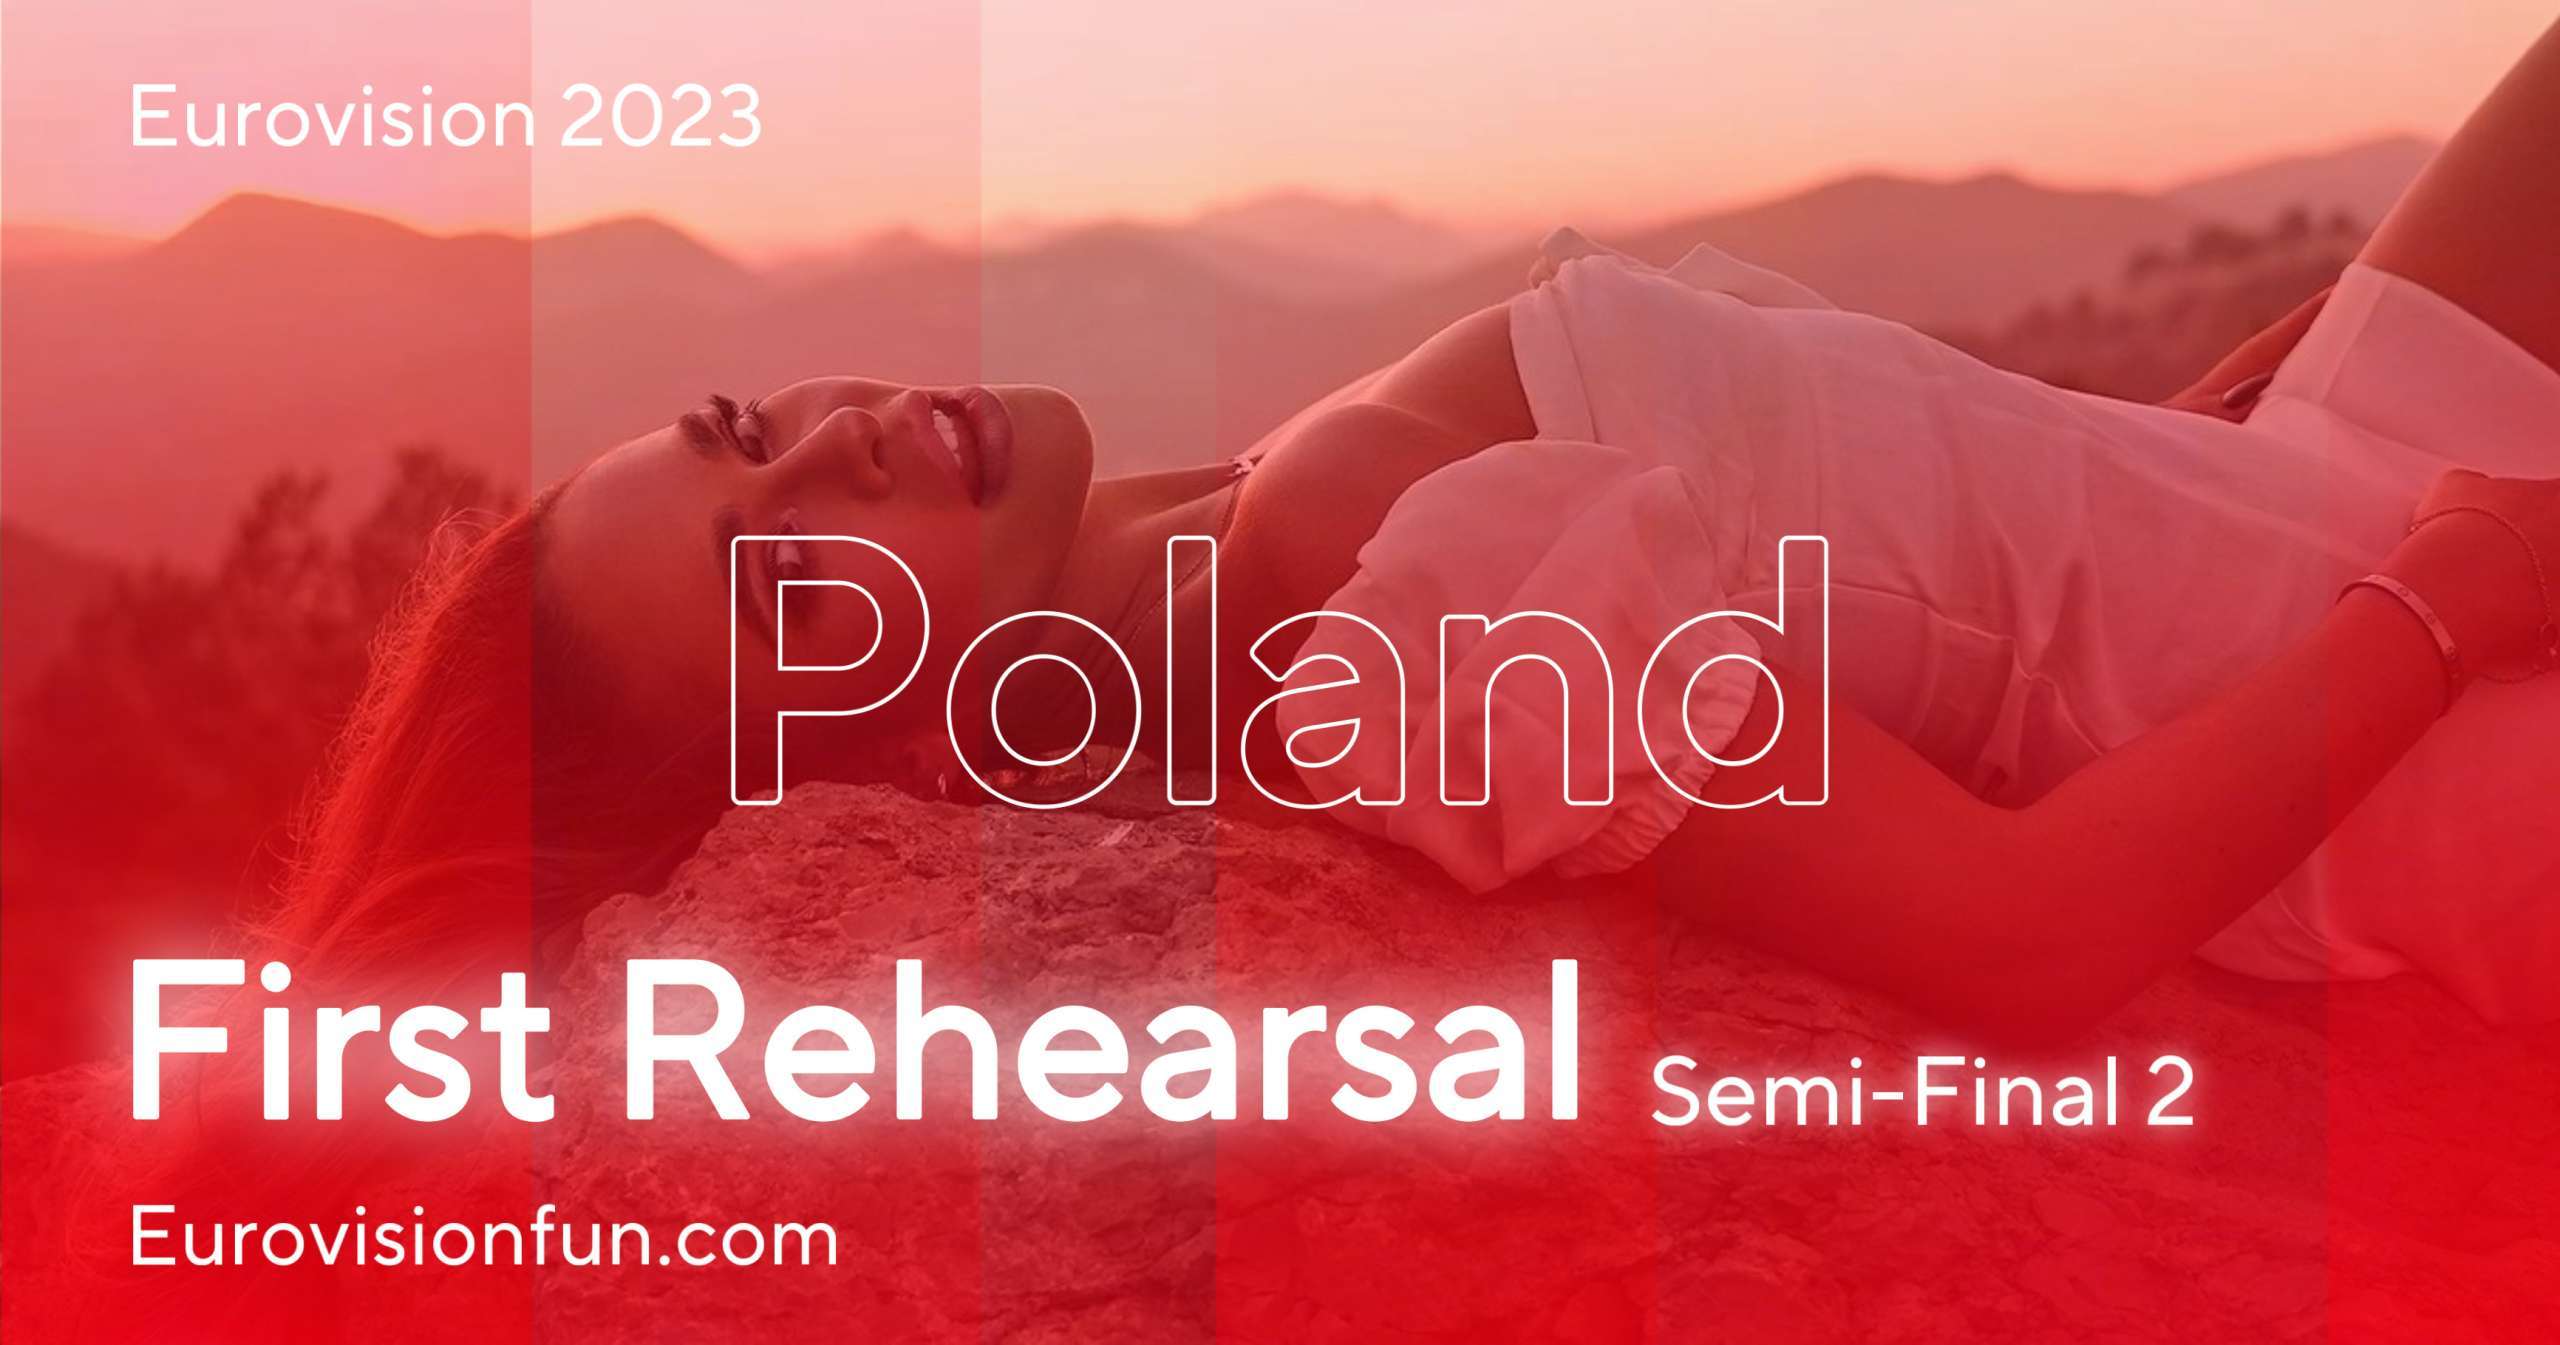 Eurovision 2023 Poland's First Rehearsal! Eurovision News Music Fun